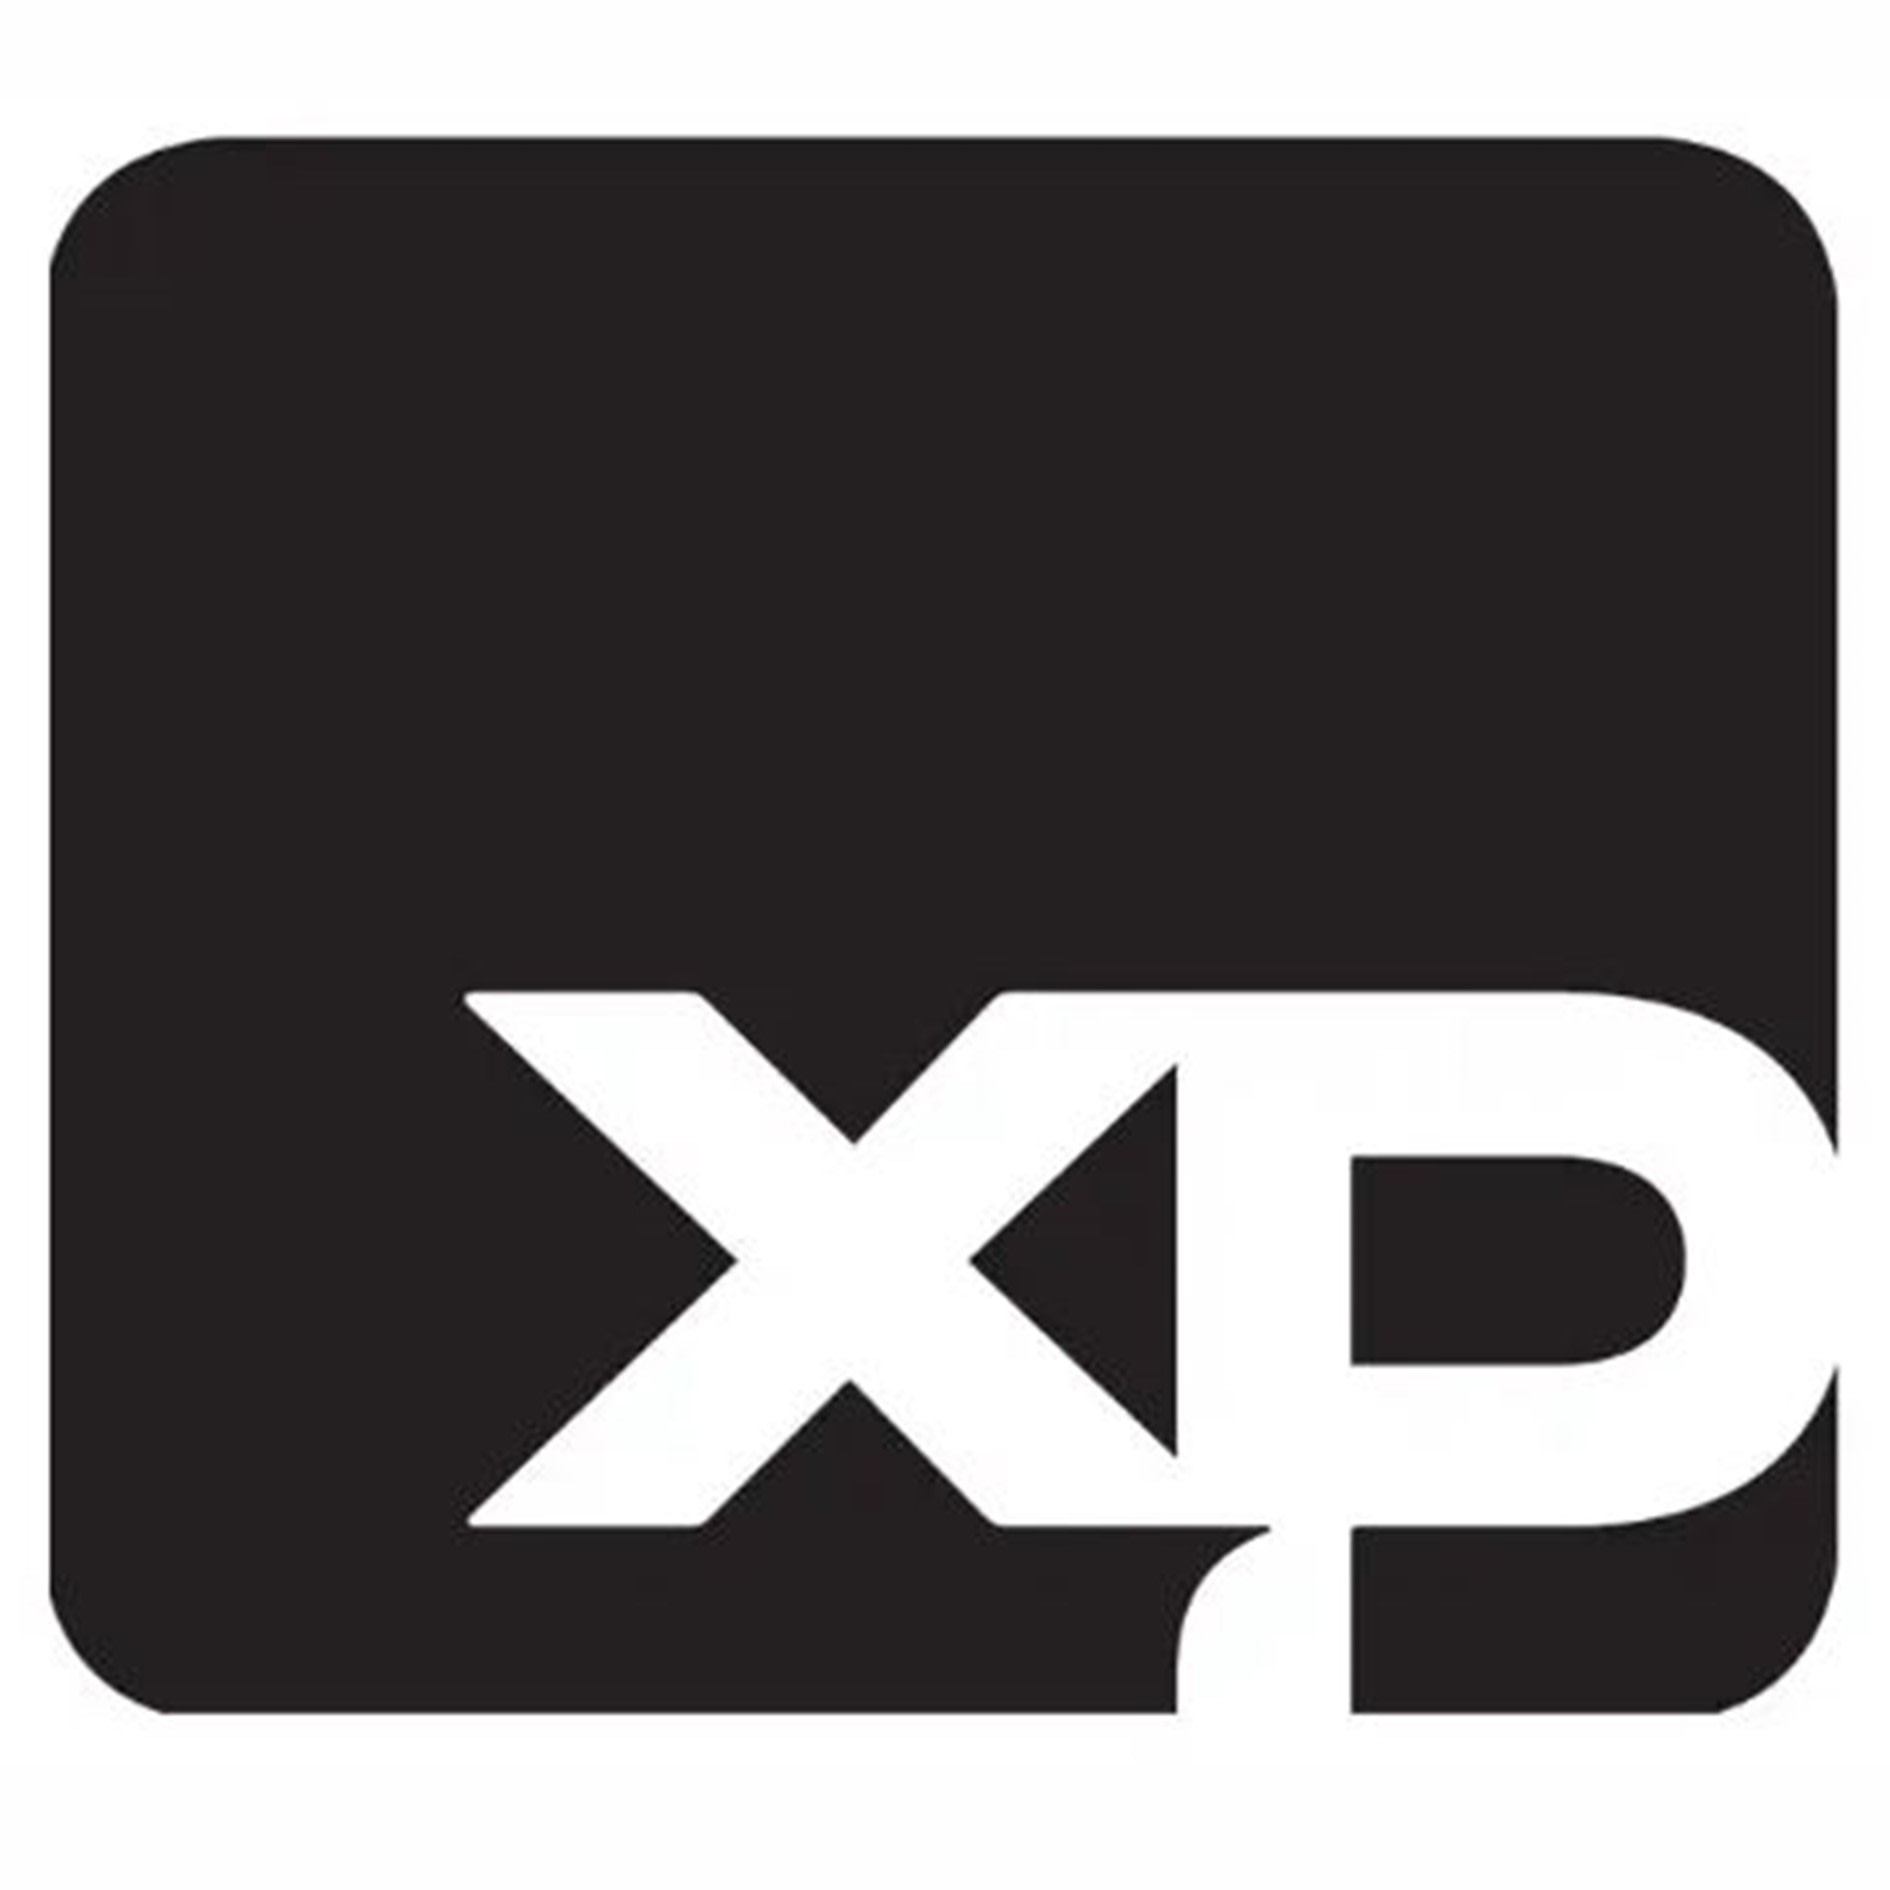 Banco XP